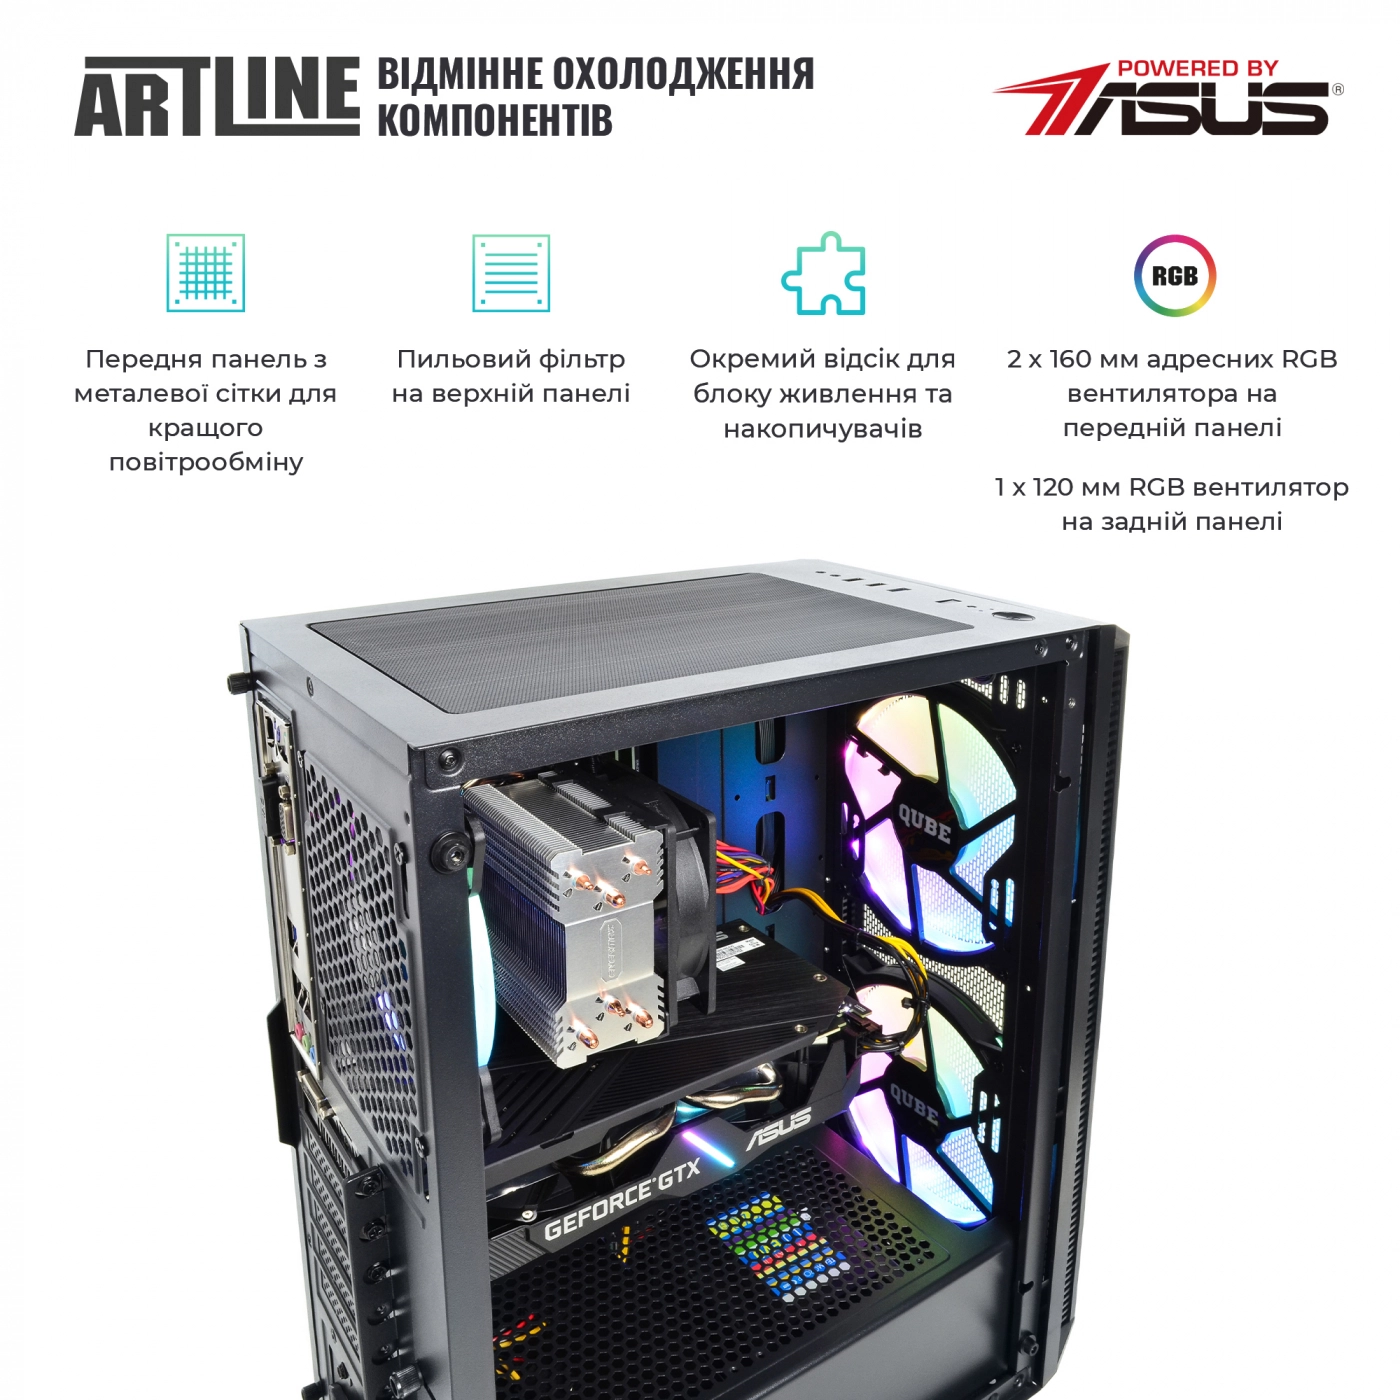 Купить Компьютер ARTLINE Gaming X65v33 - фото 2